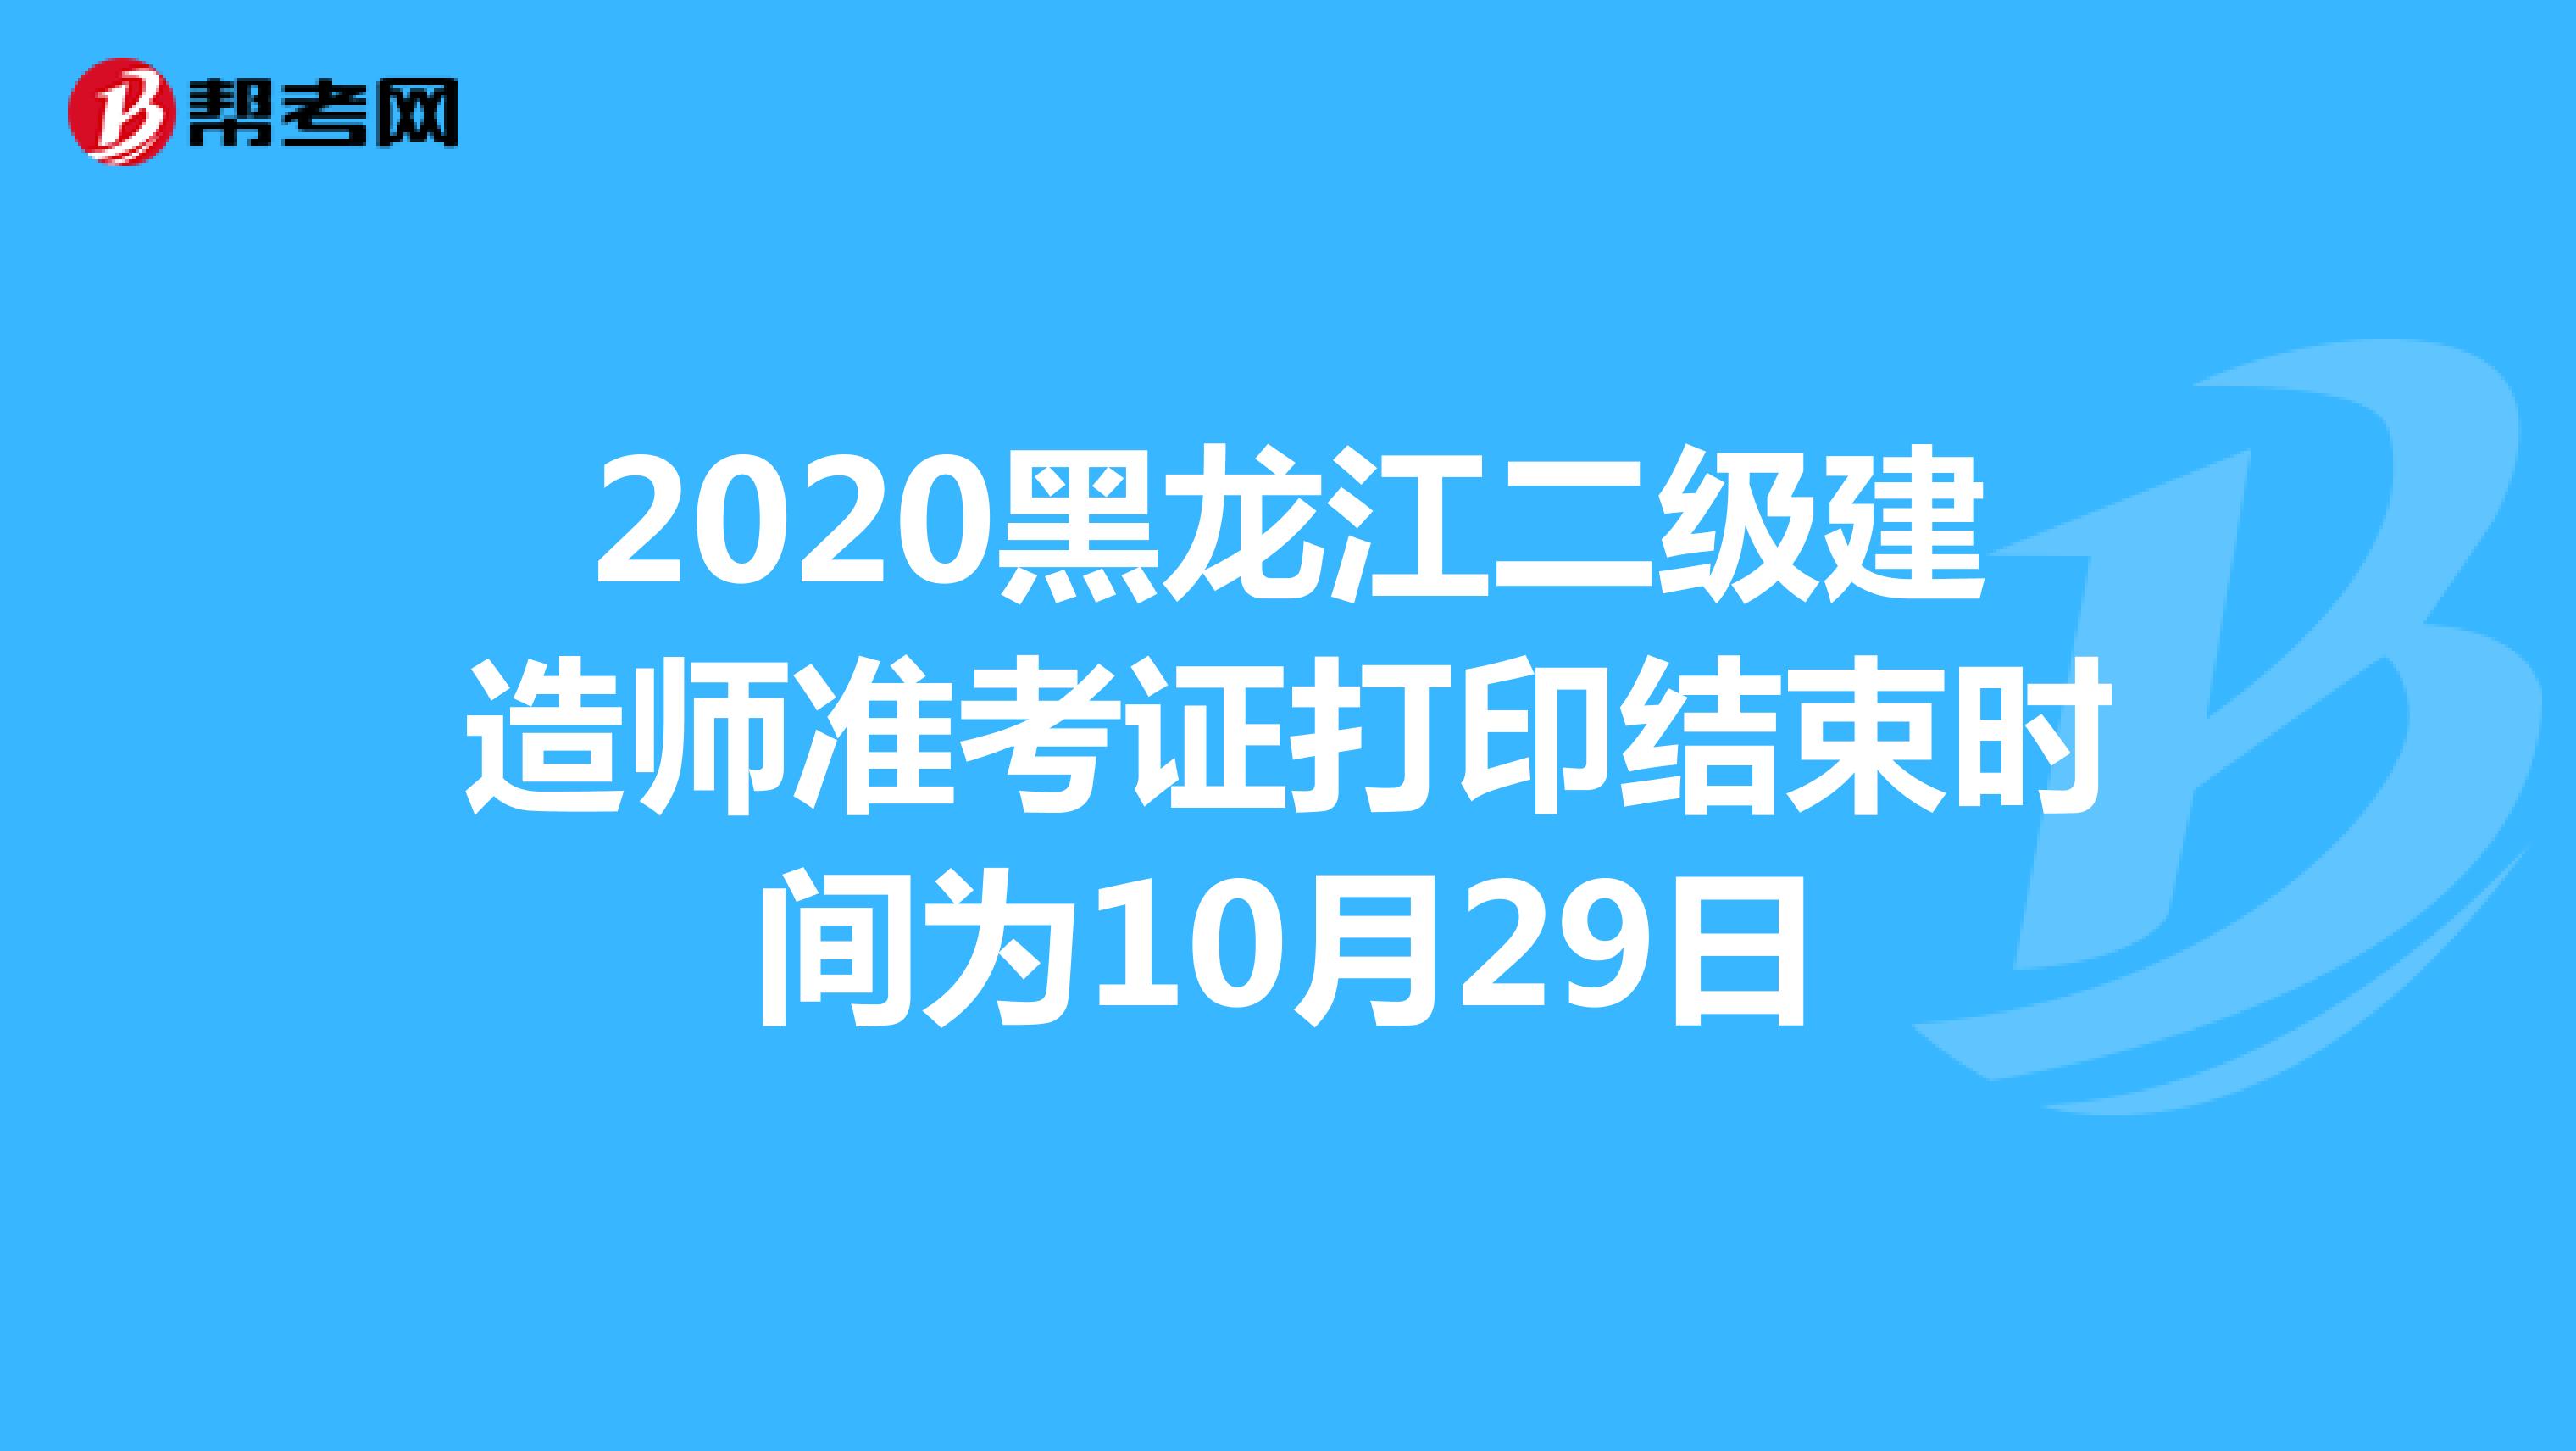 2020黑龙江二级建造师准考证打印结束时间为10月29日